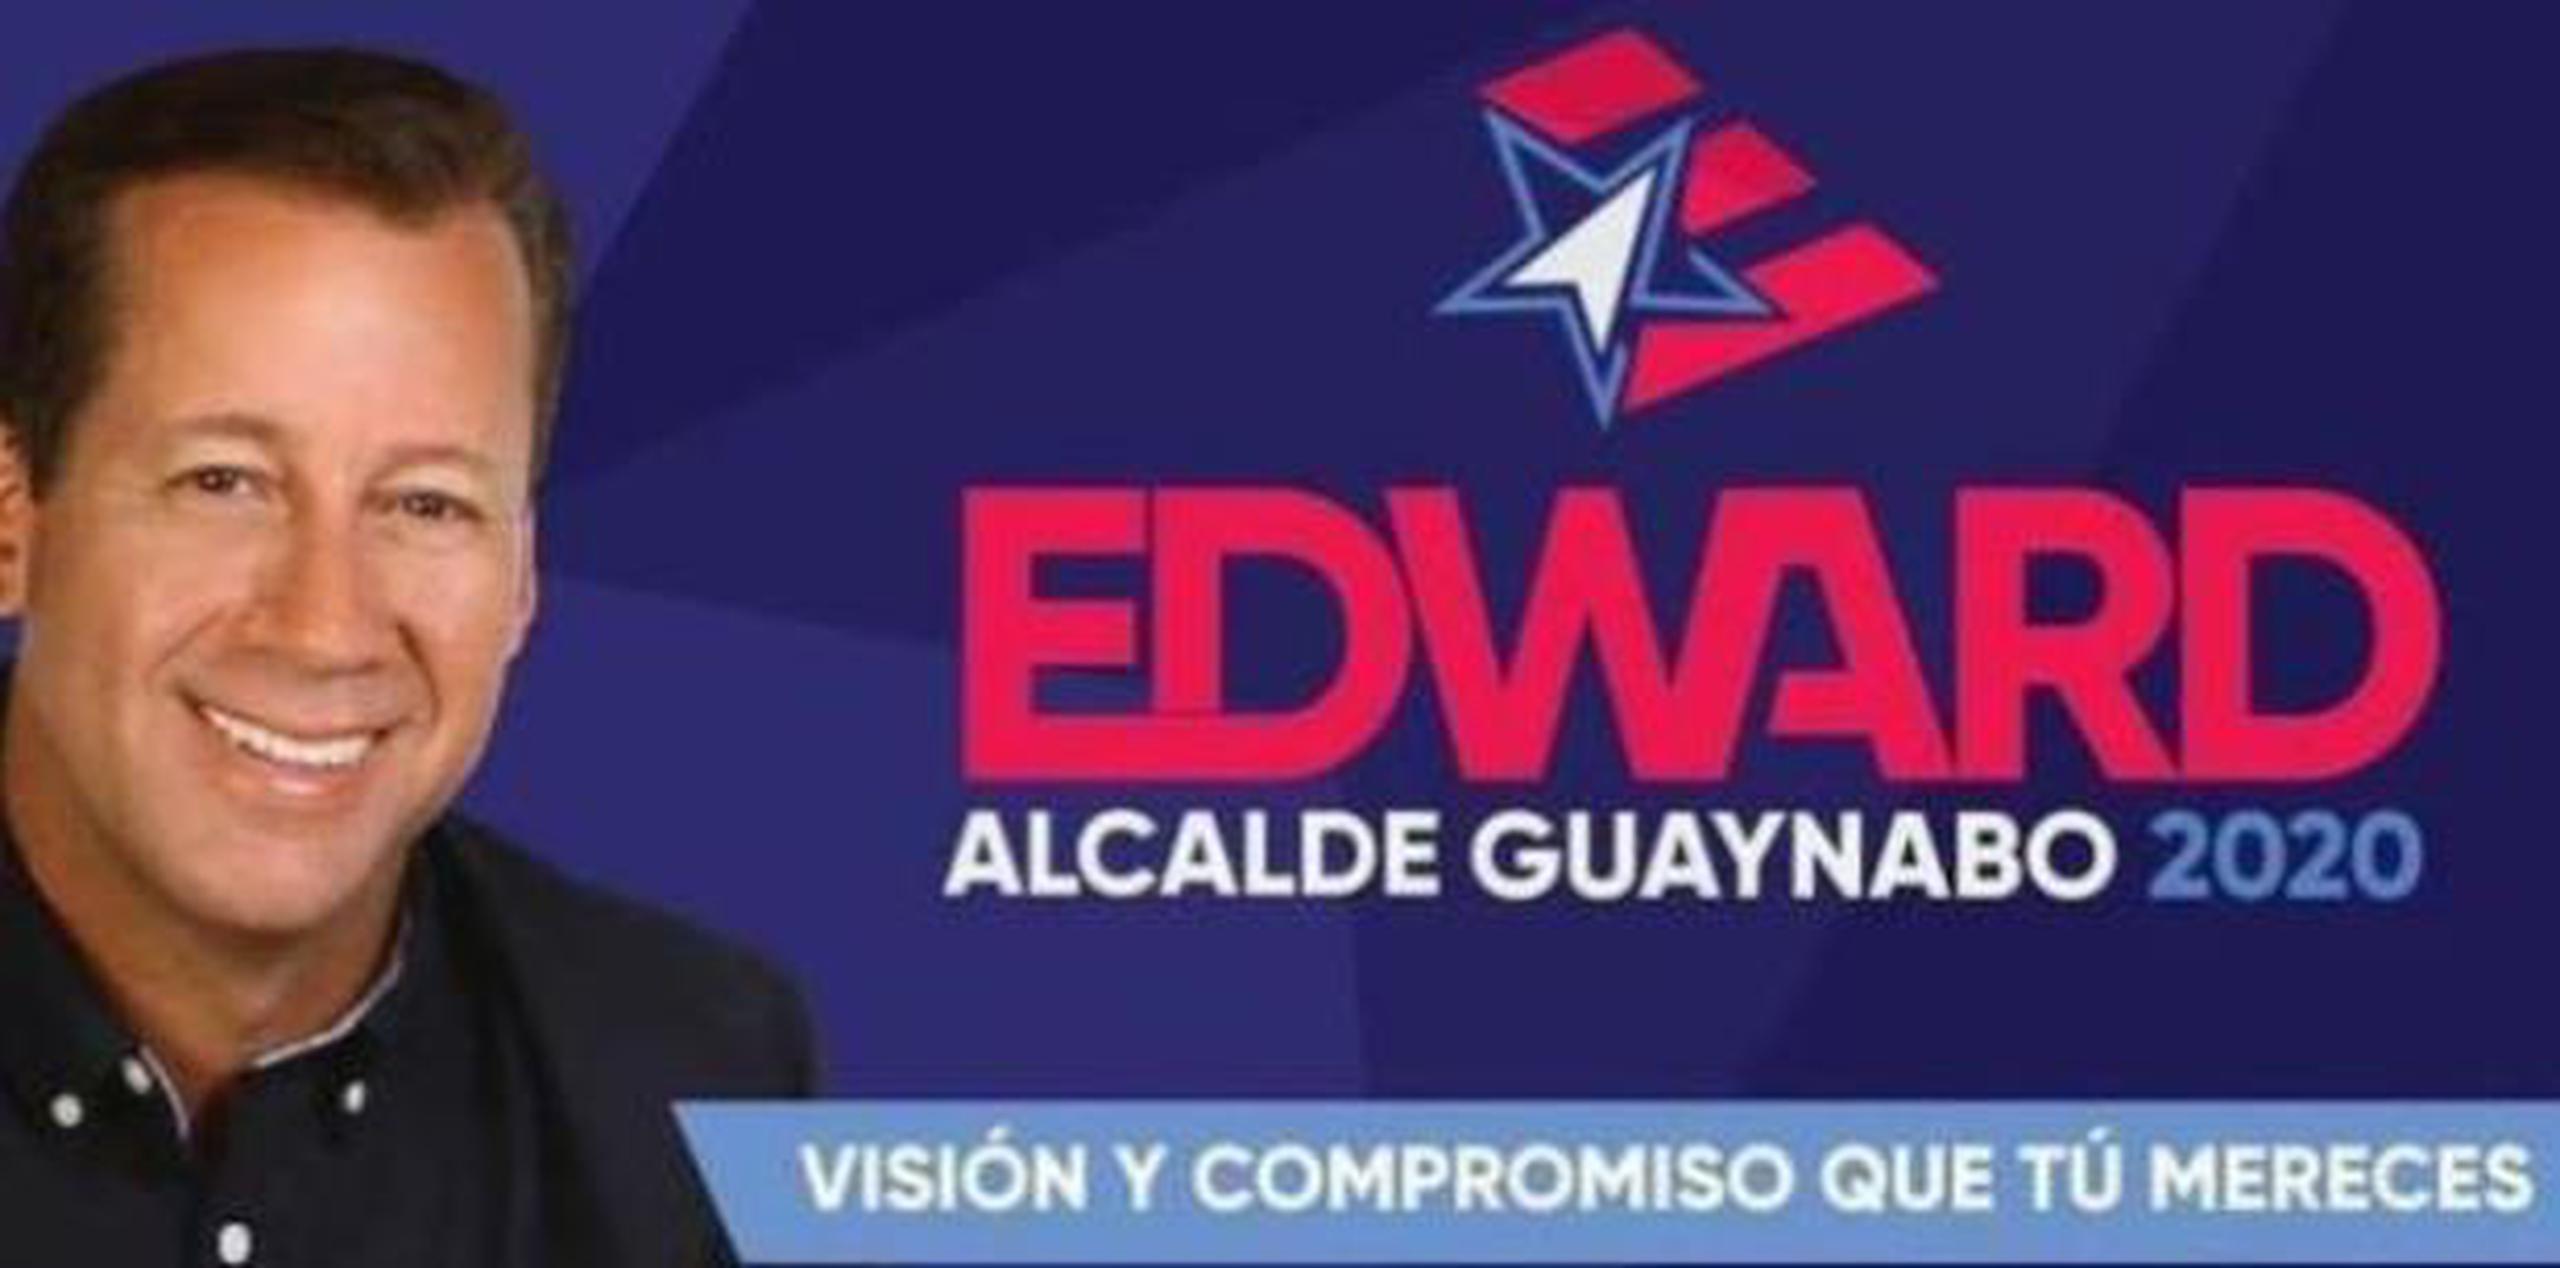 Edward O’Neill Rosa presentó su candidatura ayer ante el Partido Nuevo Progresista para aspirar por la alcaldía de Guaynabo. (Archivo)